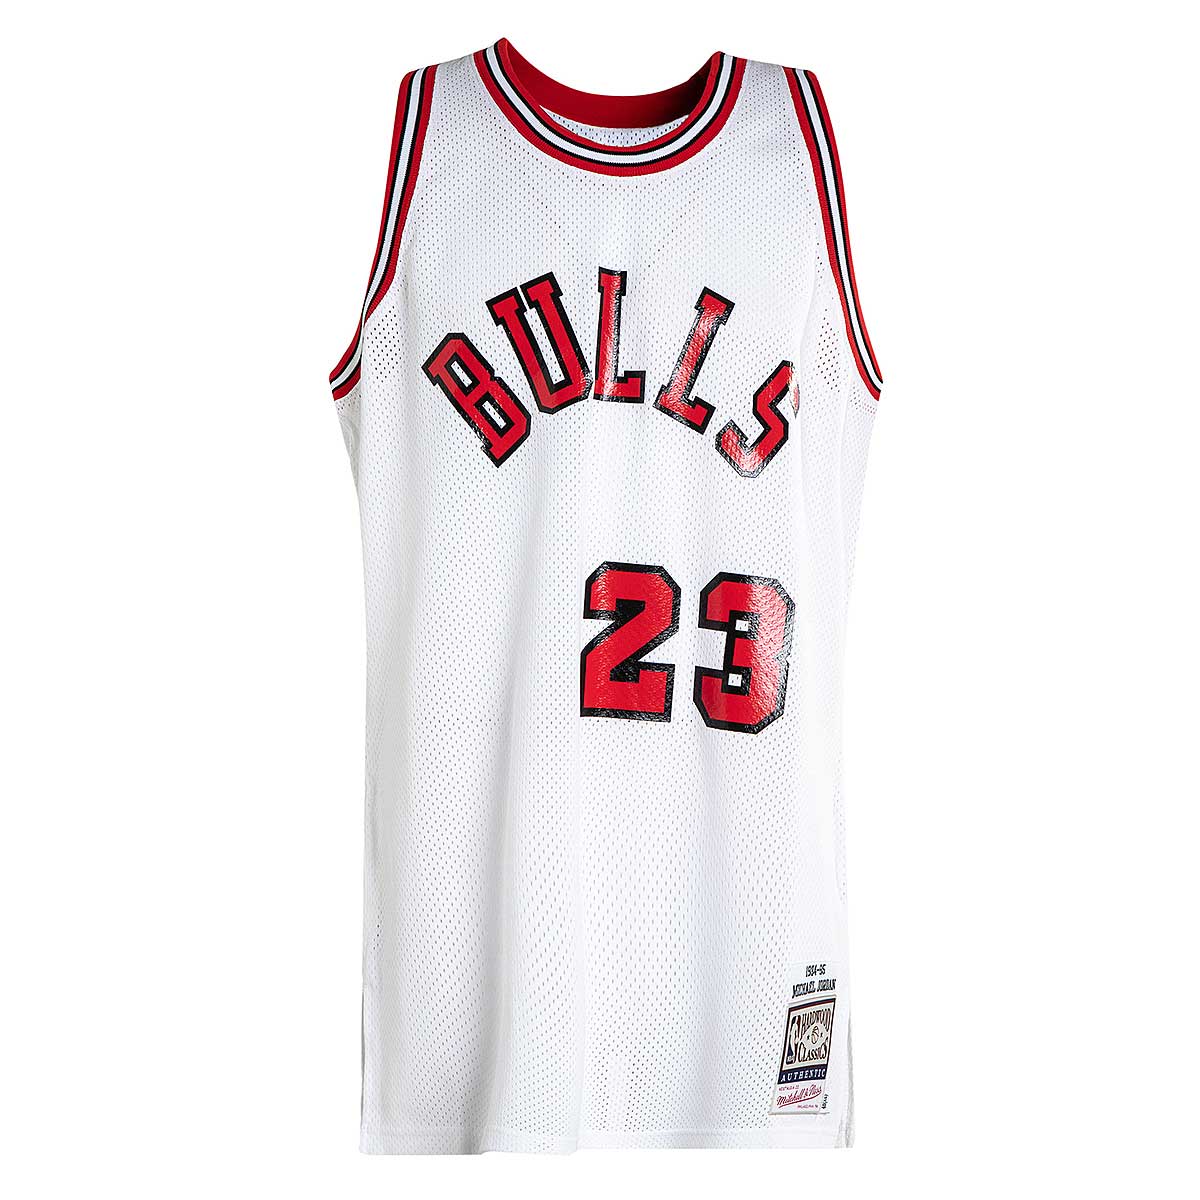 Vintage Authentic Champion Michael Jordan 23 Chicago Bulls -  Sweden